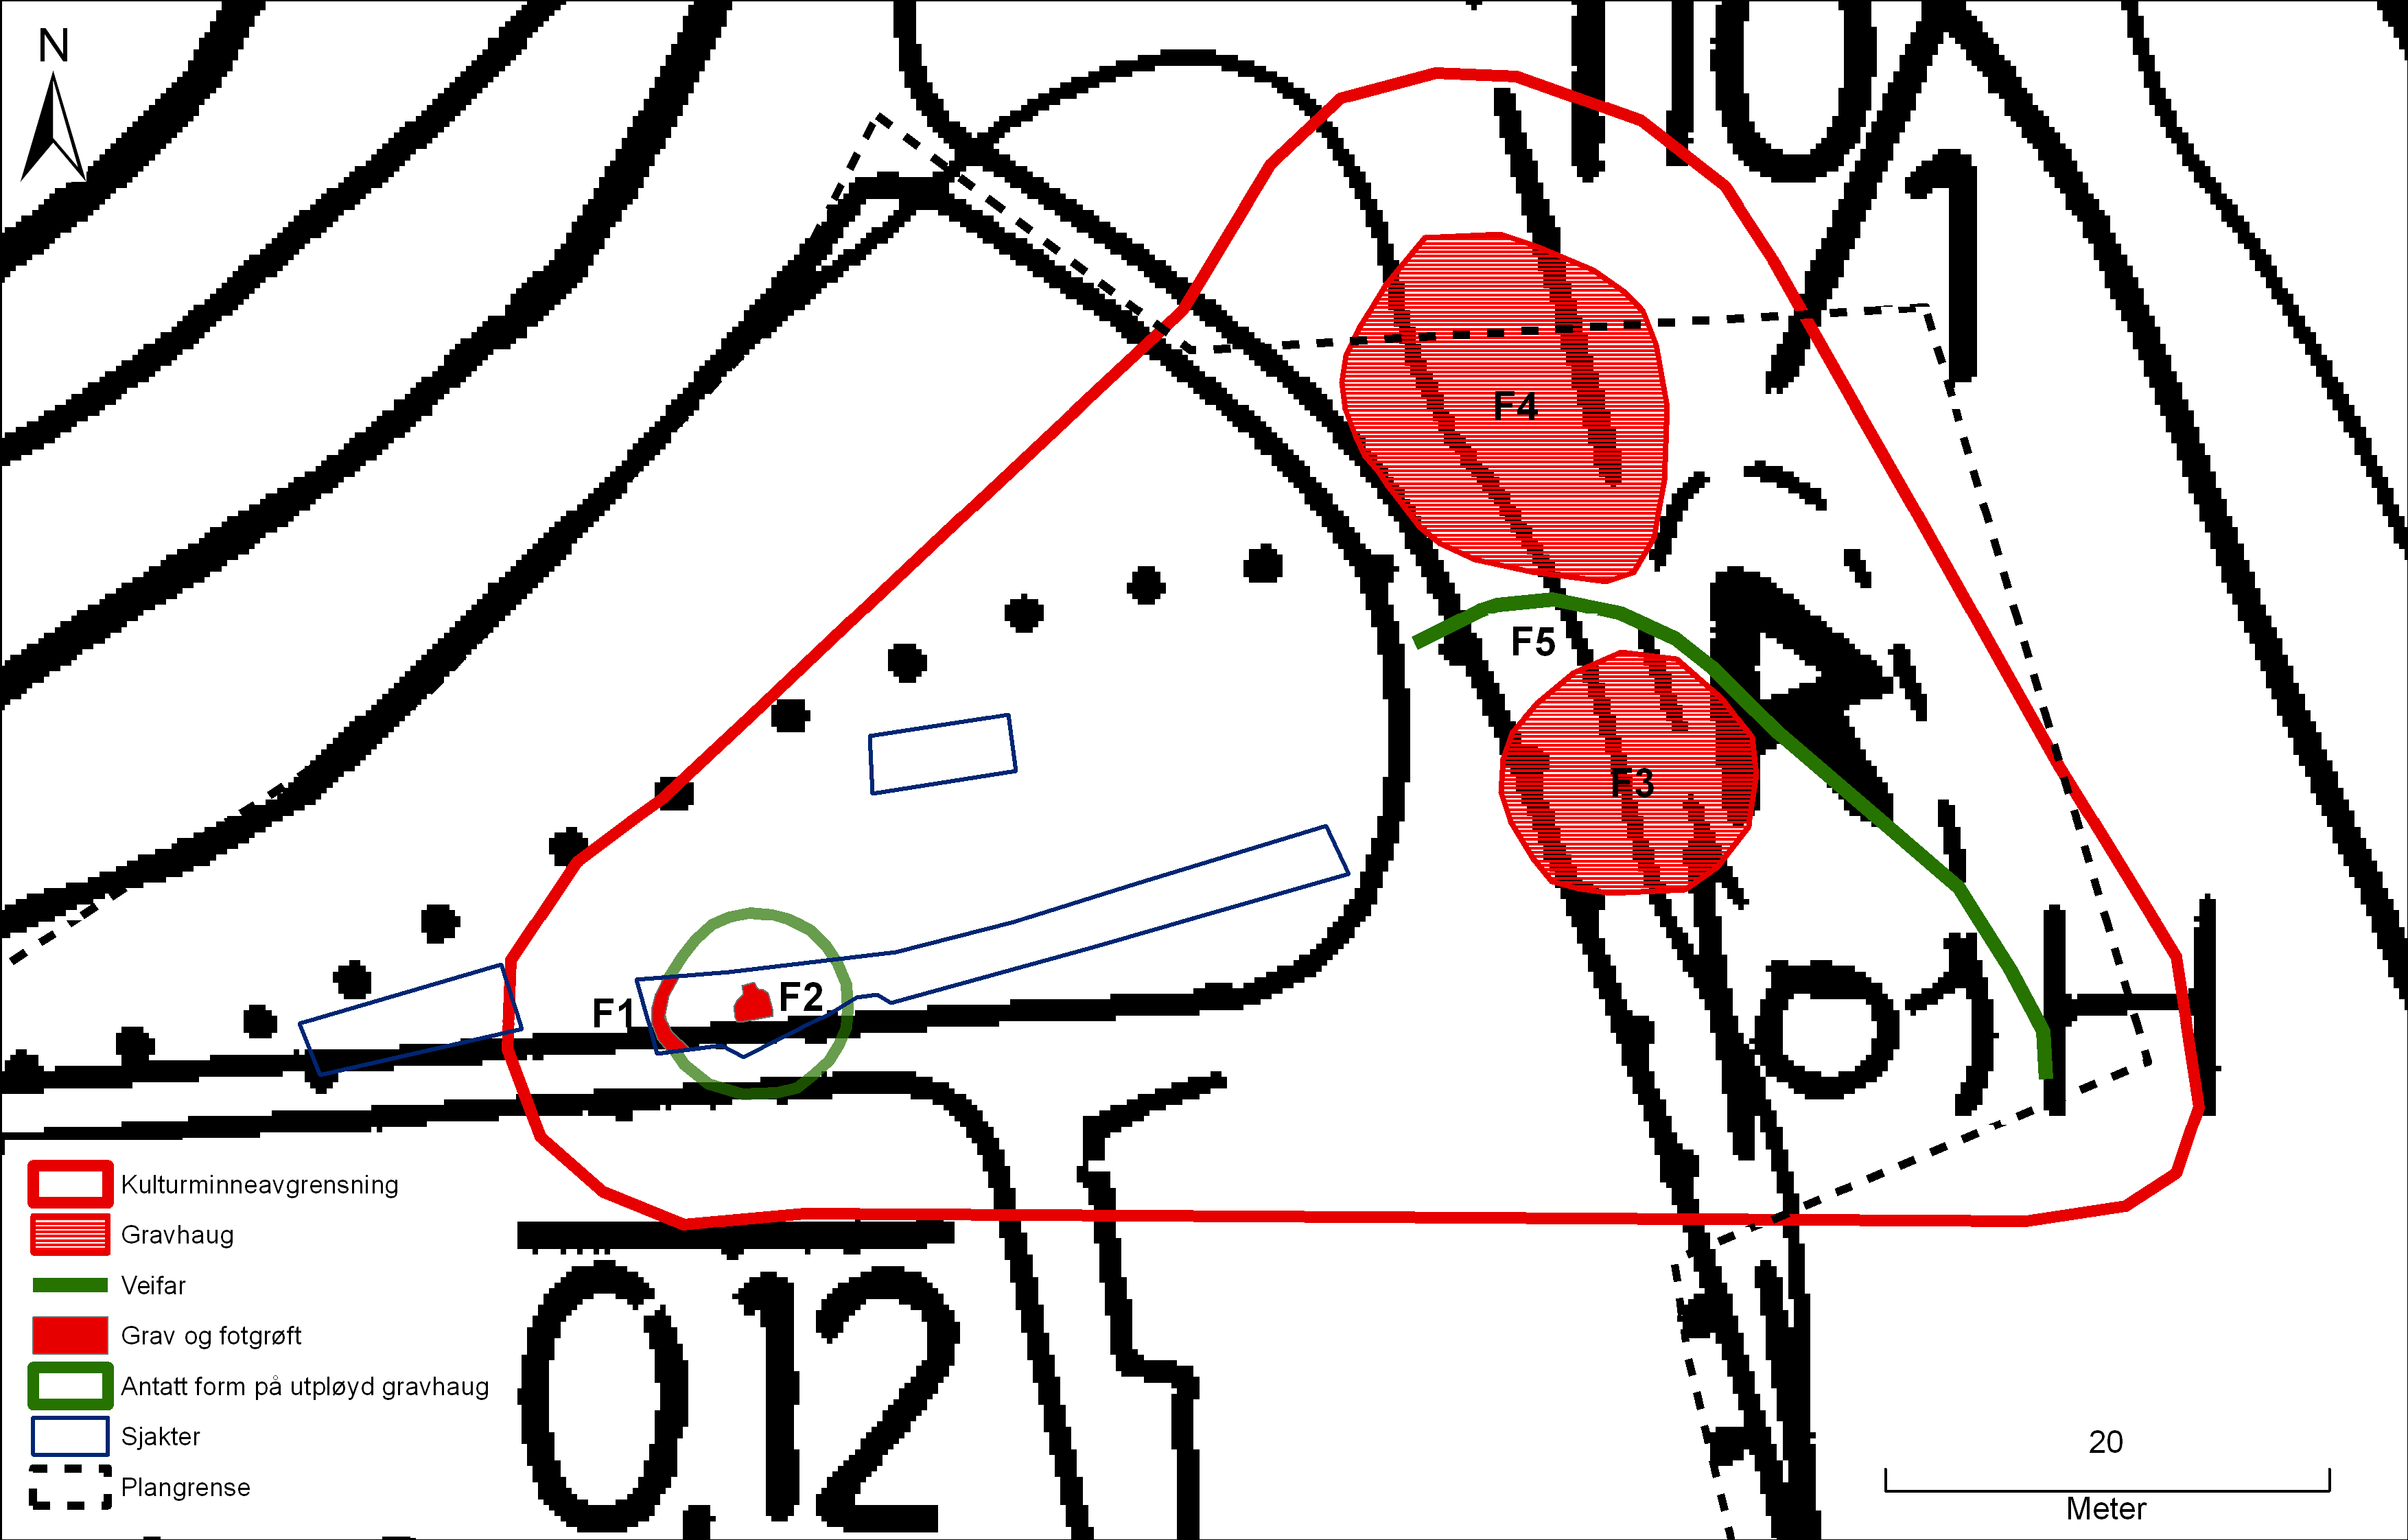 Illustrasjon 3: Kartet viser den nye og den gamle kulturminneavgrensningen rundt R42218, veifaret (F5) som går mellom haug F3 og F4, antatt form på fjernet gravhaug, fotgrøft og grav.